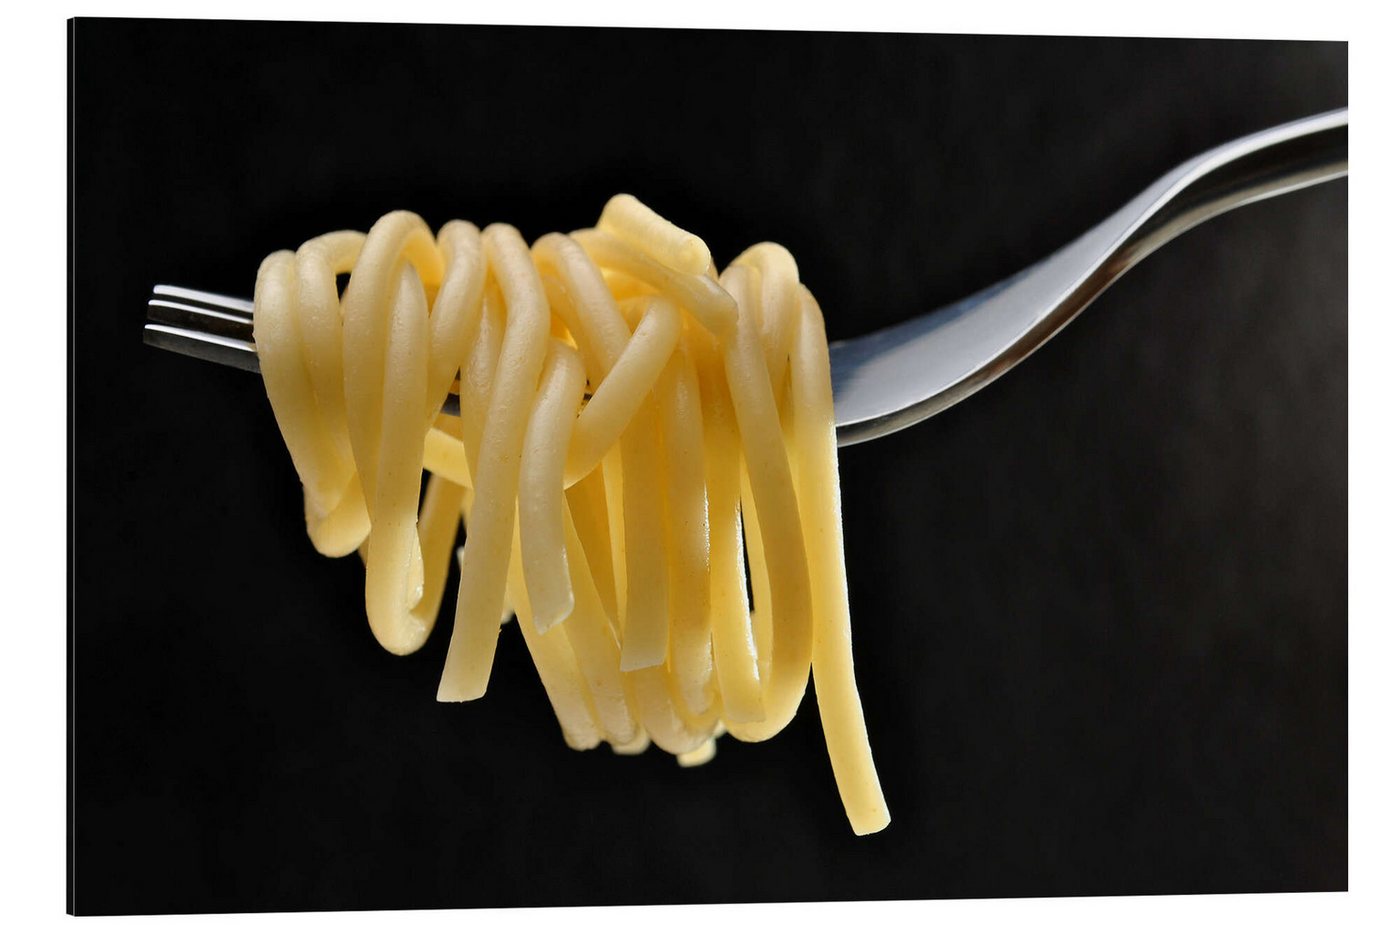 Posterlounge Alu-Dibond-Druck Editors Choice, Spaghetti auf einer Gabel, Fotografie von Posterlounge